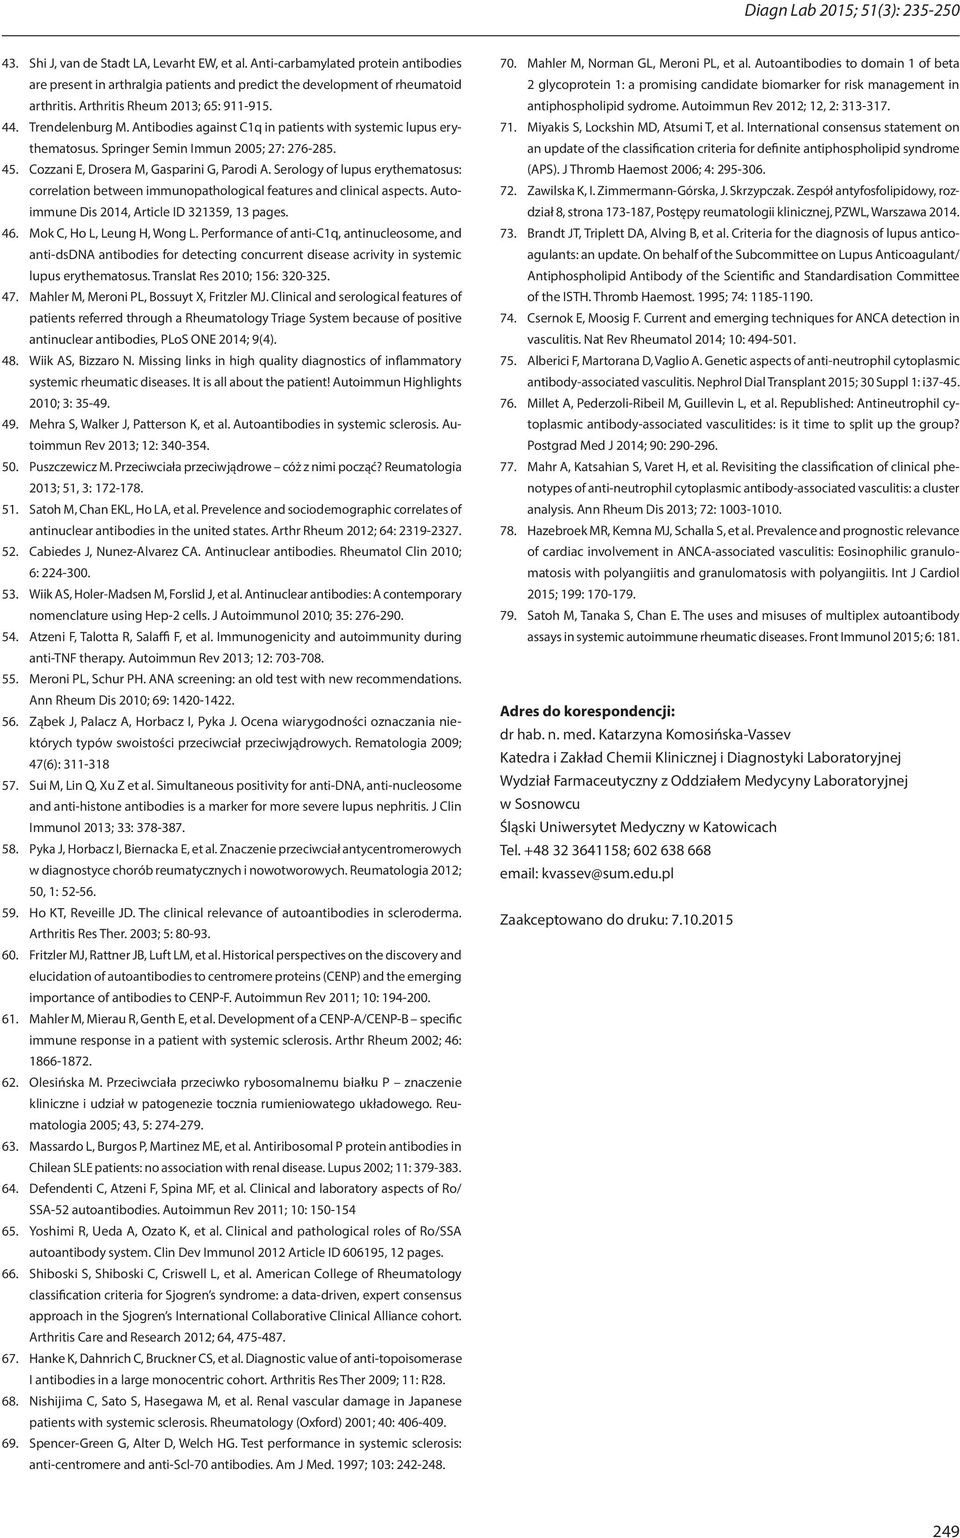 Antibodies against C1q in patients with systemic lupus erythematosus. Springer Semin Immun 2005; 27: 276-285. 45. Cozzani E, Drosera M, Gasparini G, Parodi A.